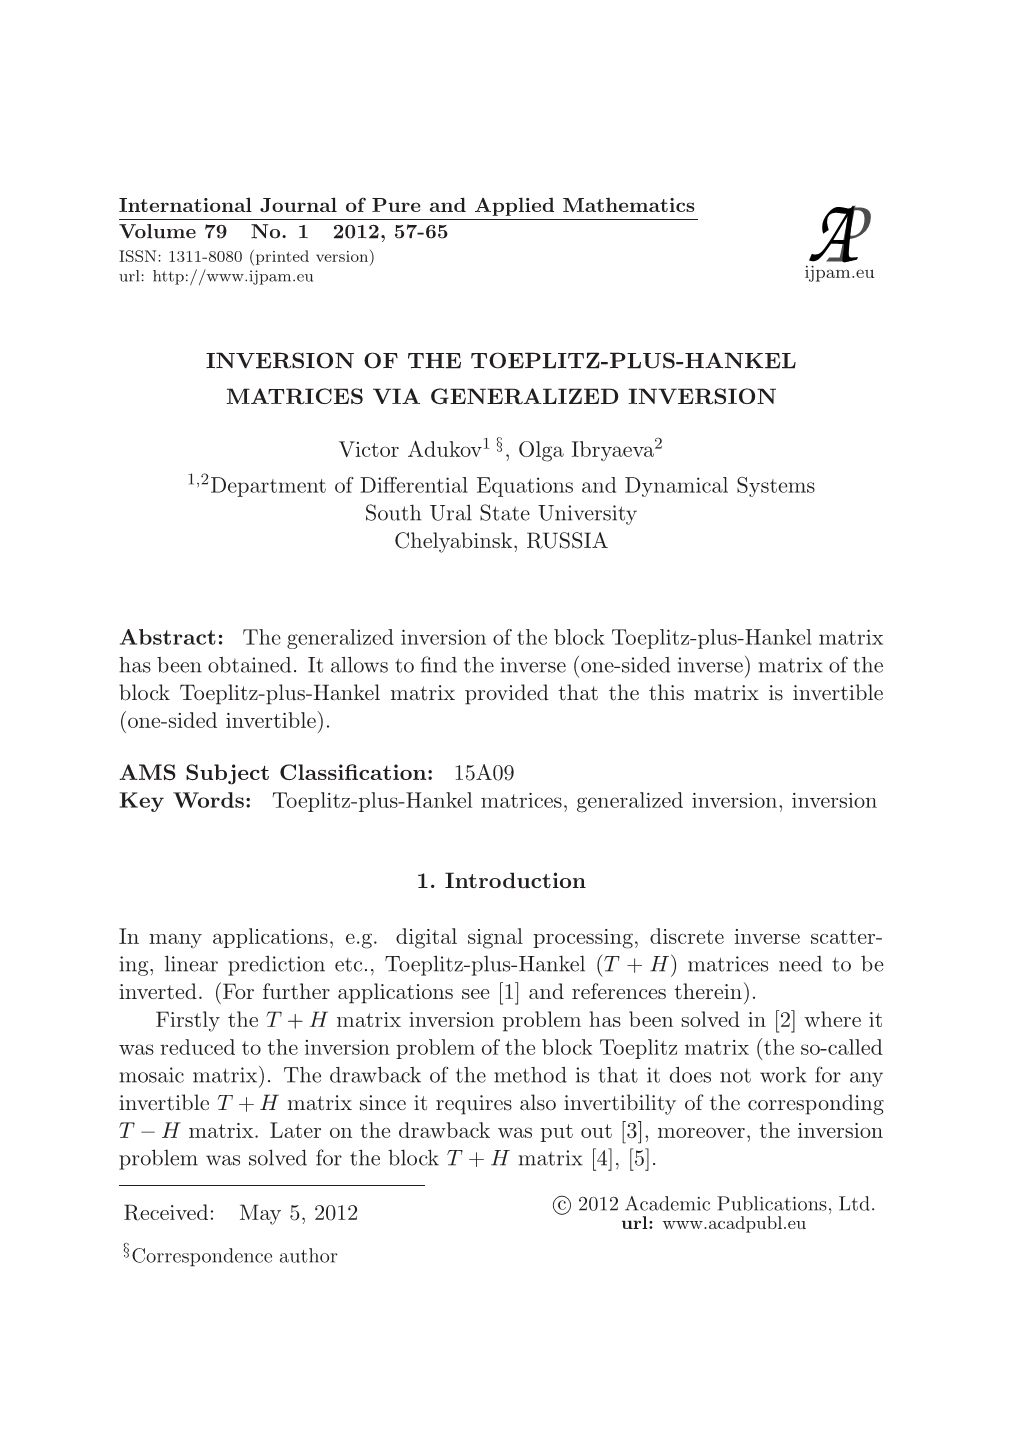 Inversion of the Toeplitz-Plus-Hankel Matrices Via Generalized Inversion